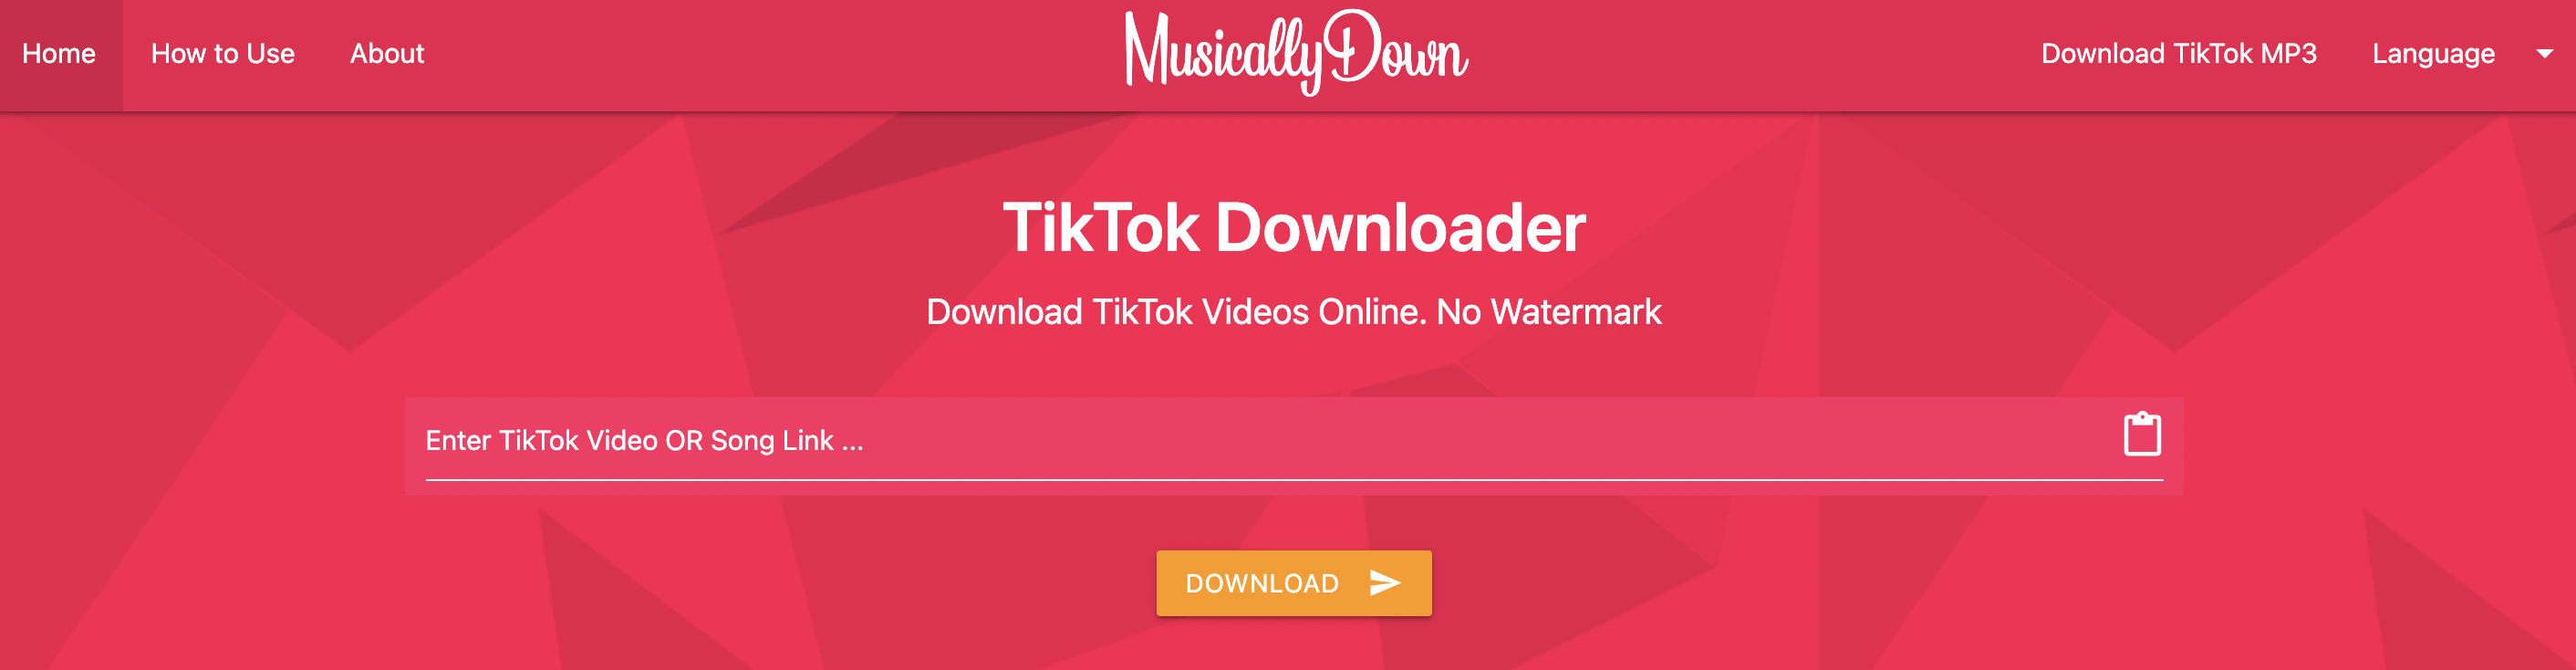 download videos tiktok online